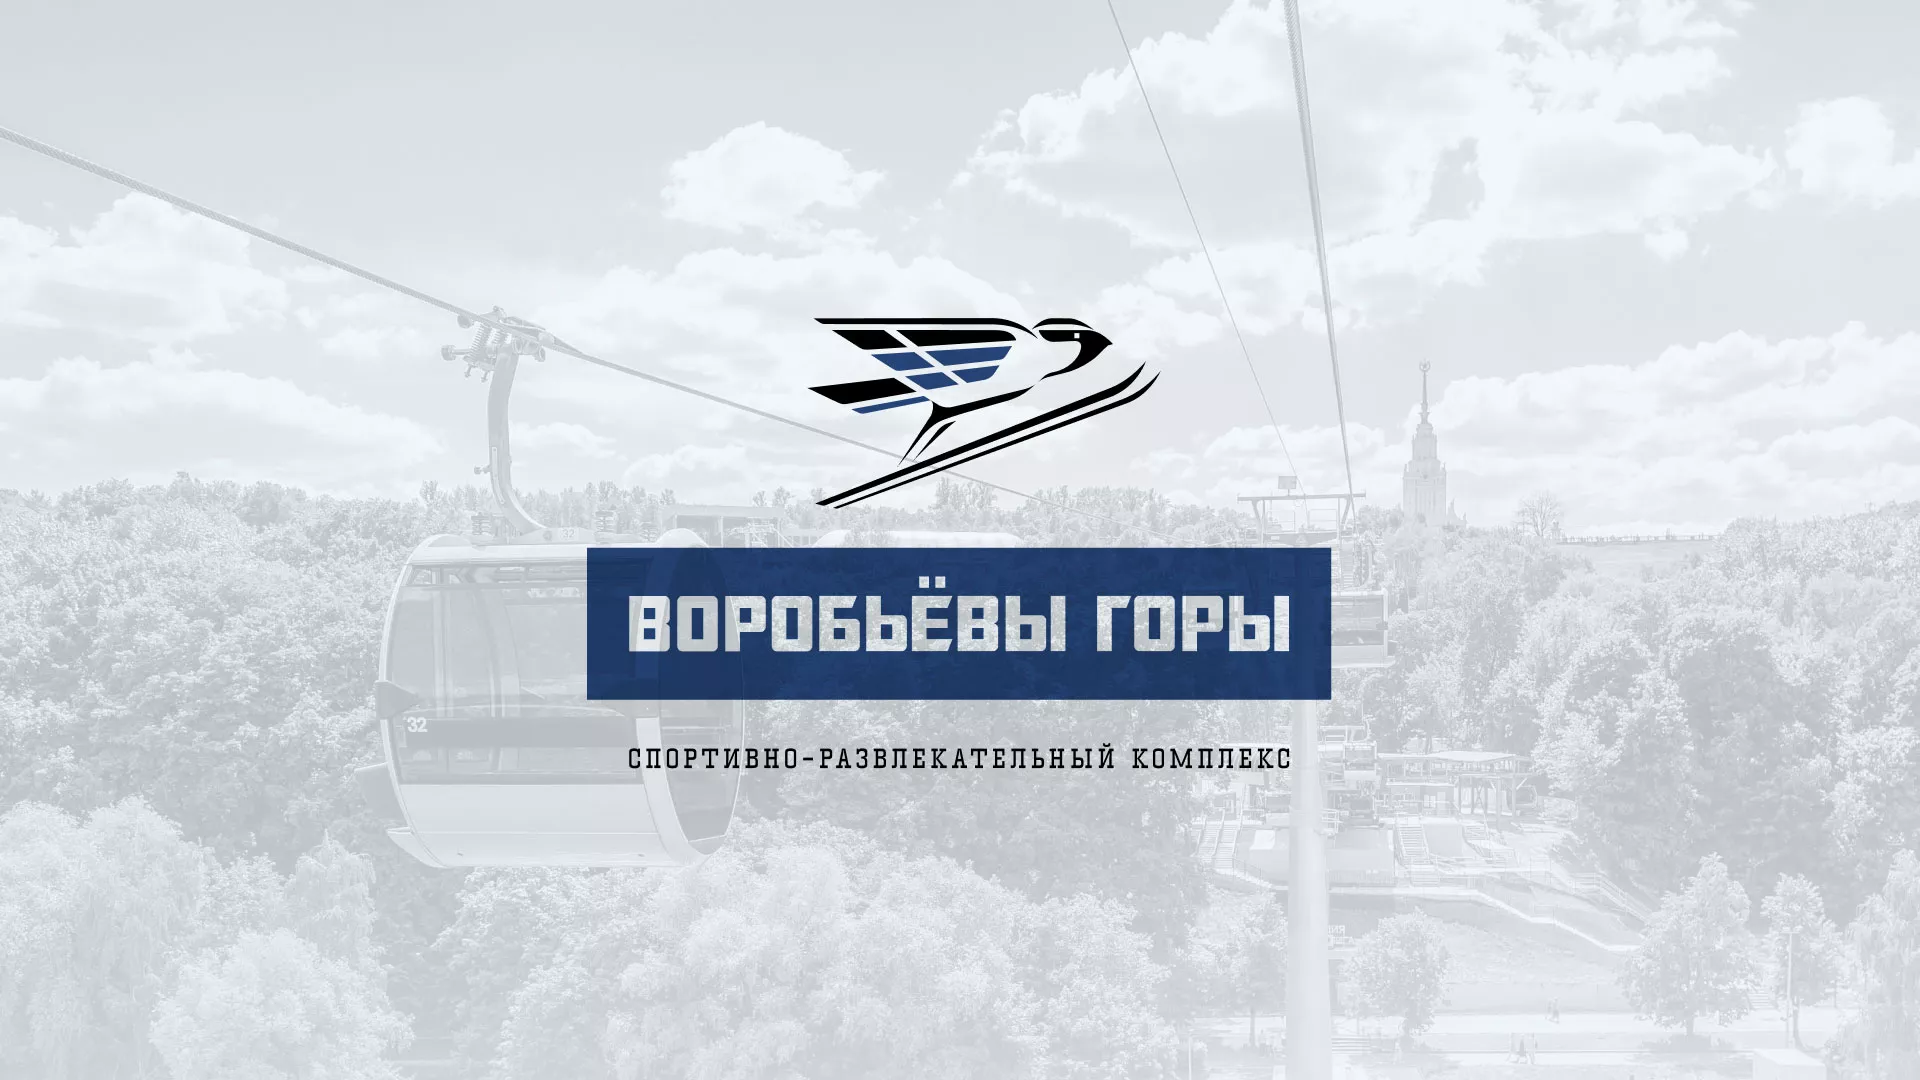 Разработка сайта в Рыбинске для спортивно-развлекательного комплекса «Воробьёвы горы»